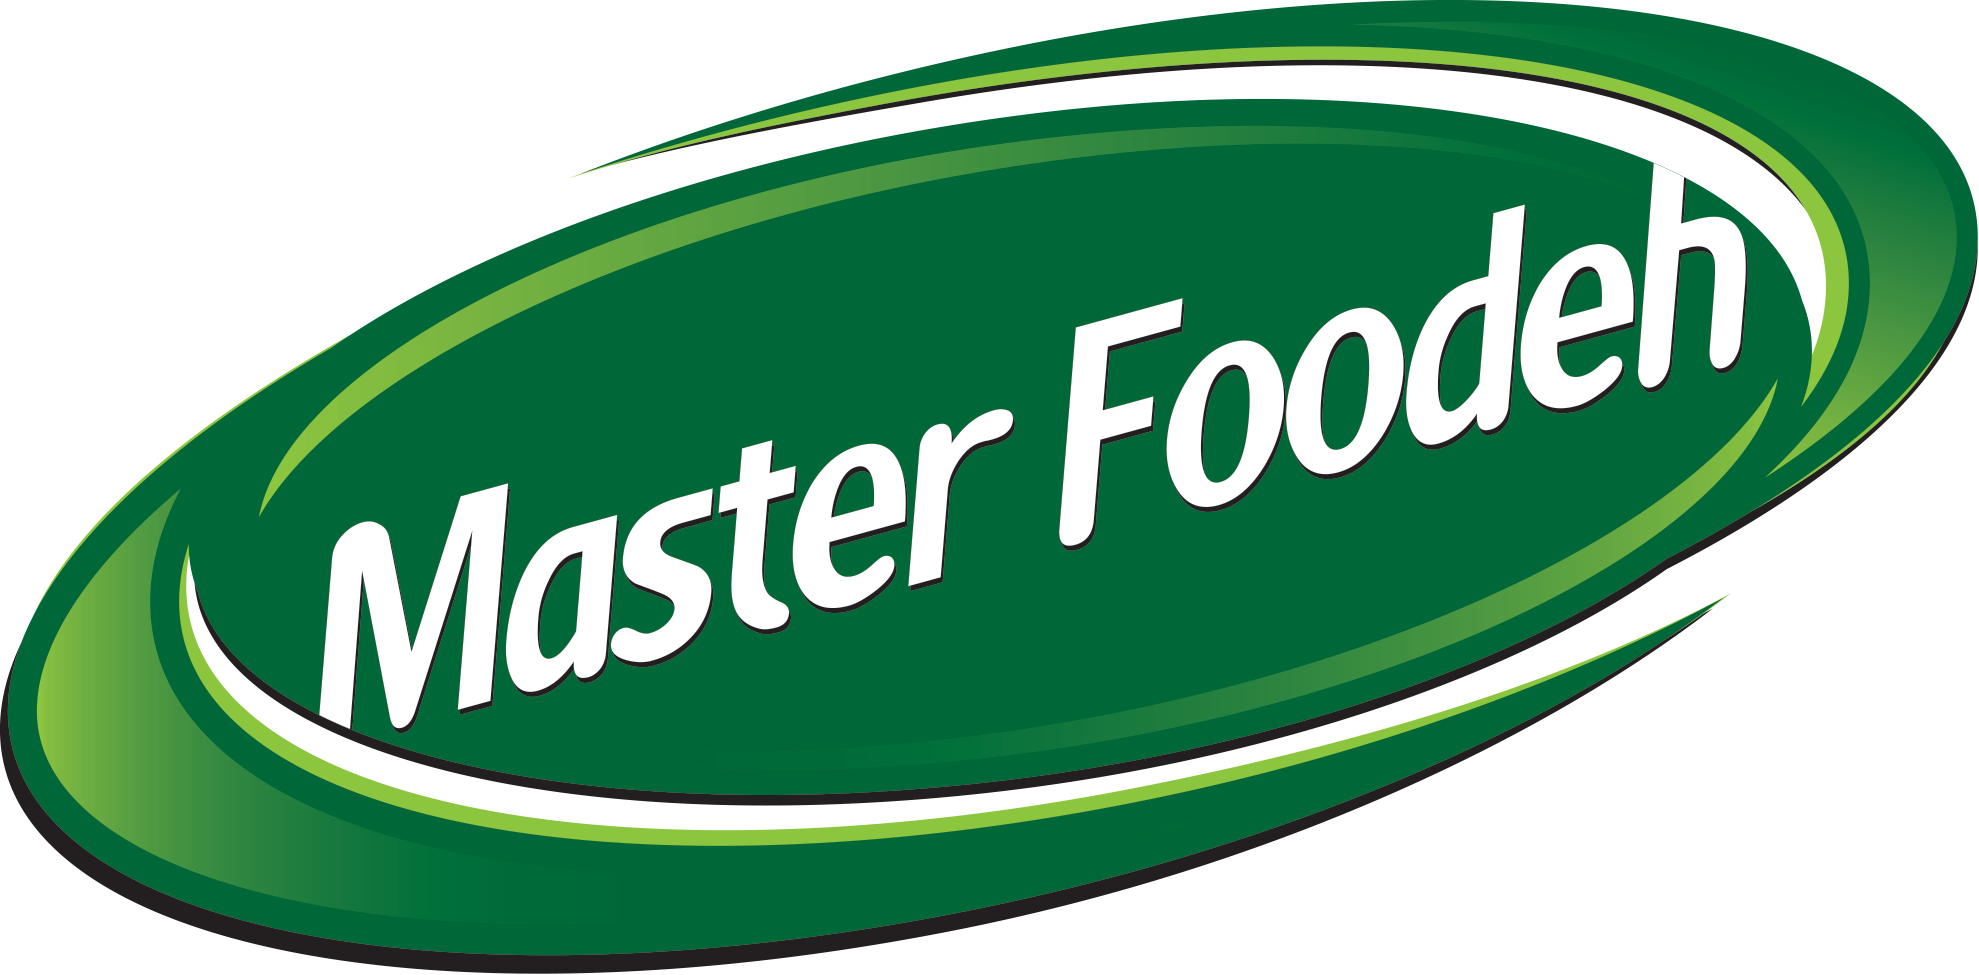 مدیر ارشد مالی | CFO - شرکت صنایع غذایی ماسترفوده | Master Foodeh